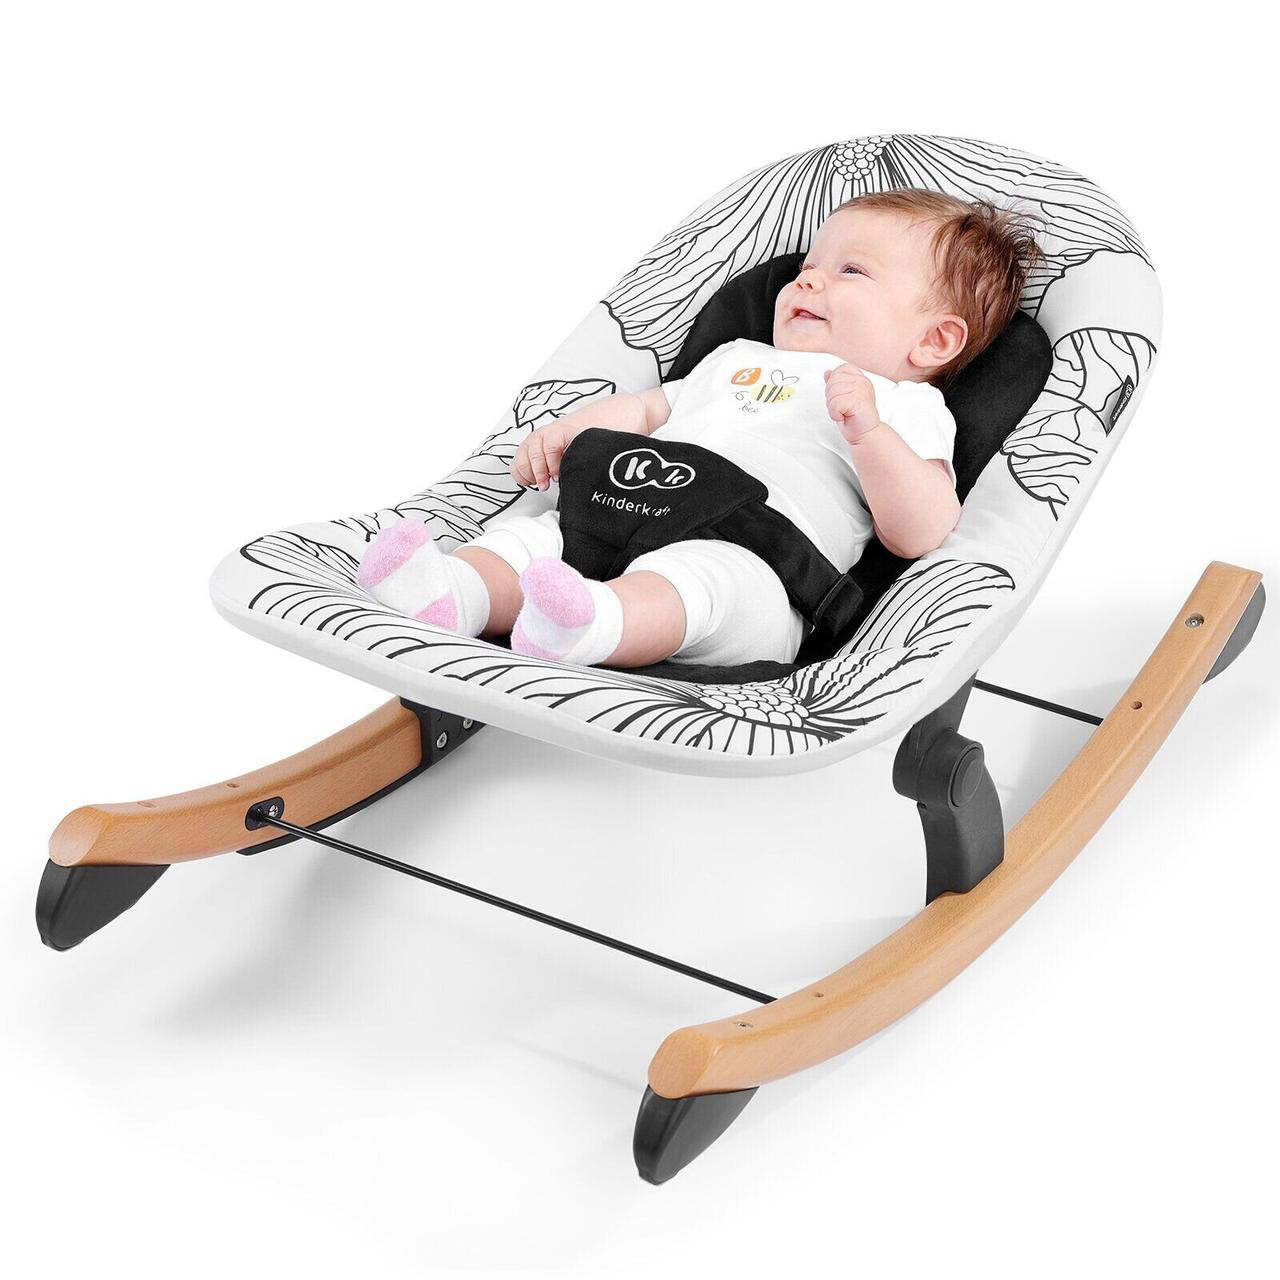 Как выбрать детское кресло-шезлонг для новорожденного?